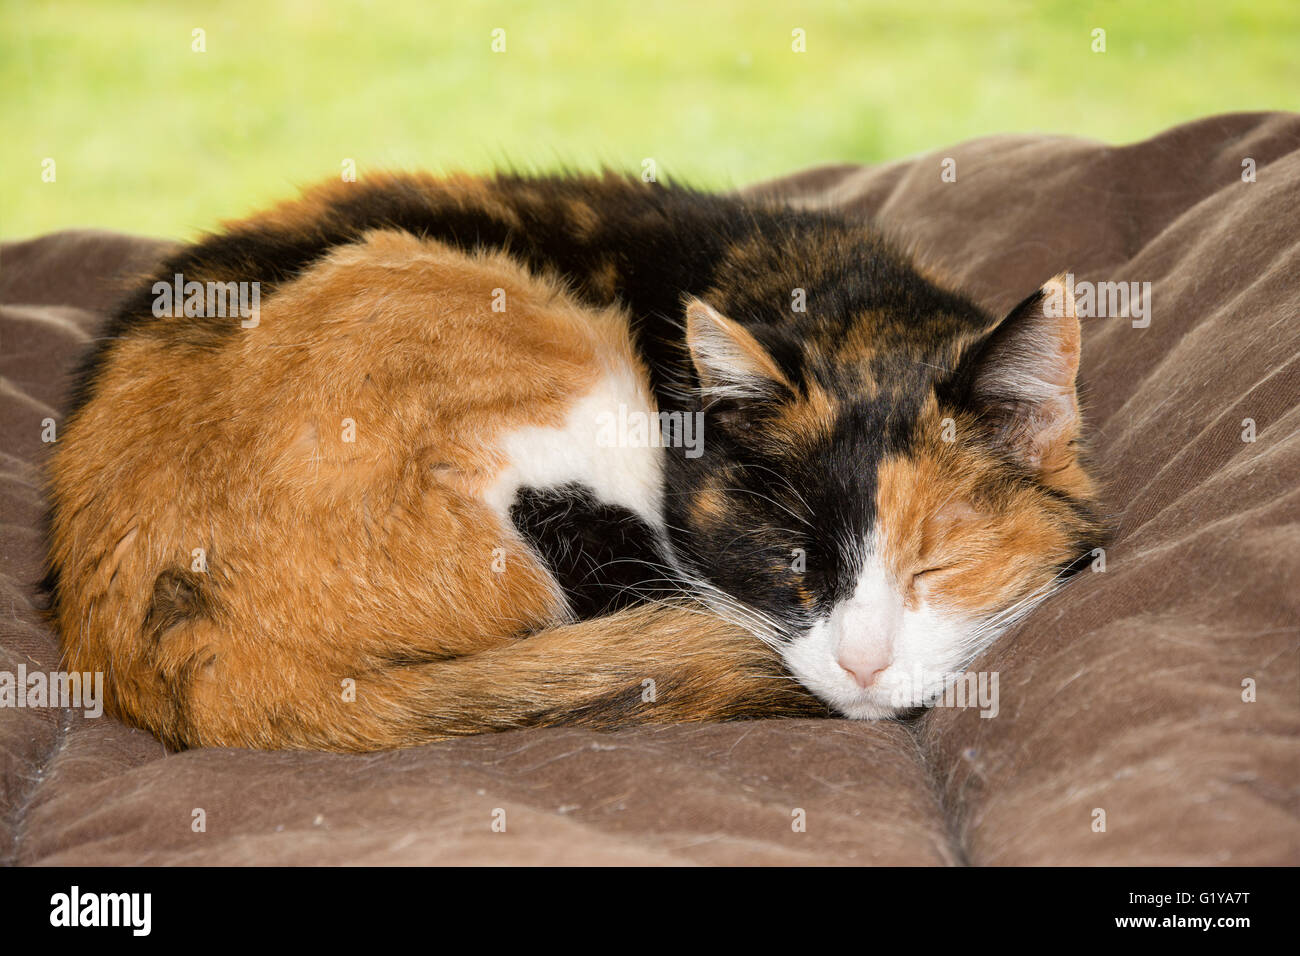 Vieux chat calico dormir paisiblement dans un lit en face d'une fenêtre Banque D'Images